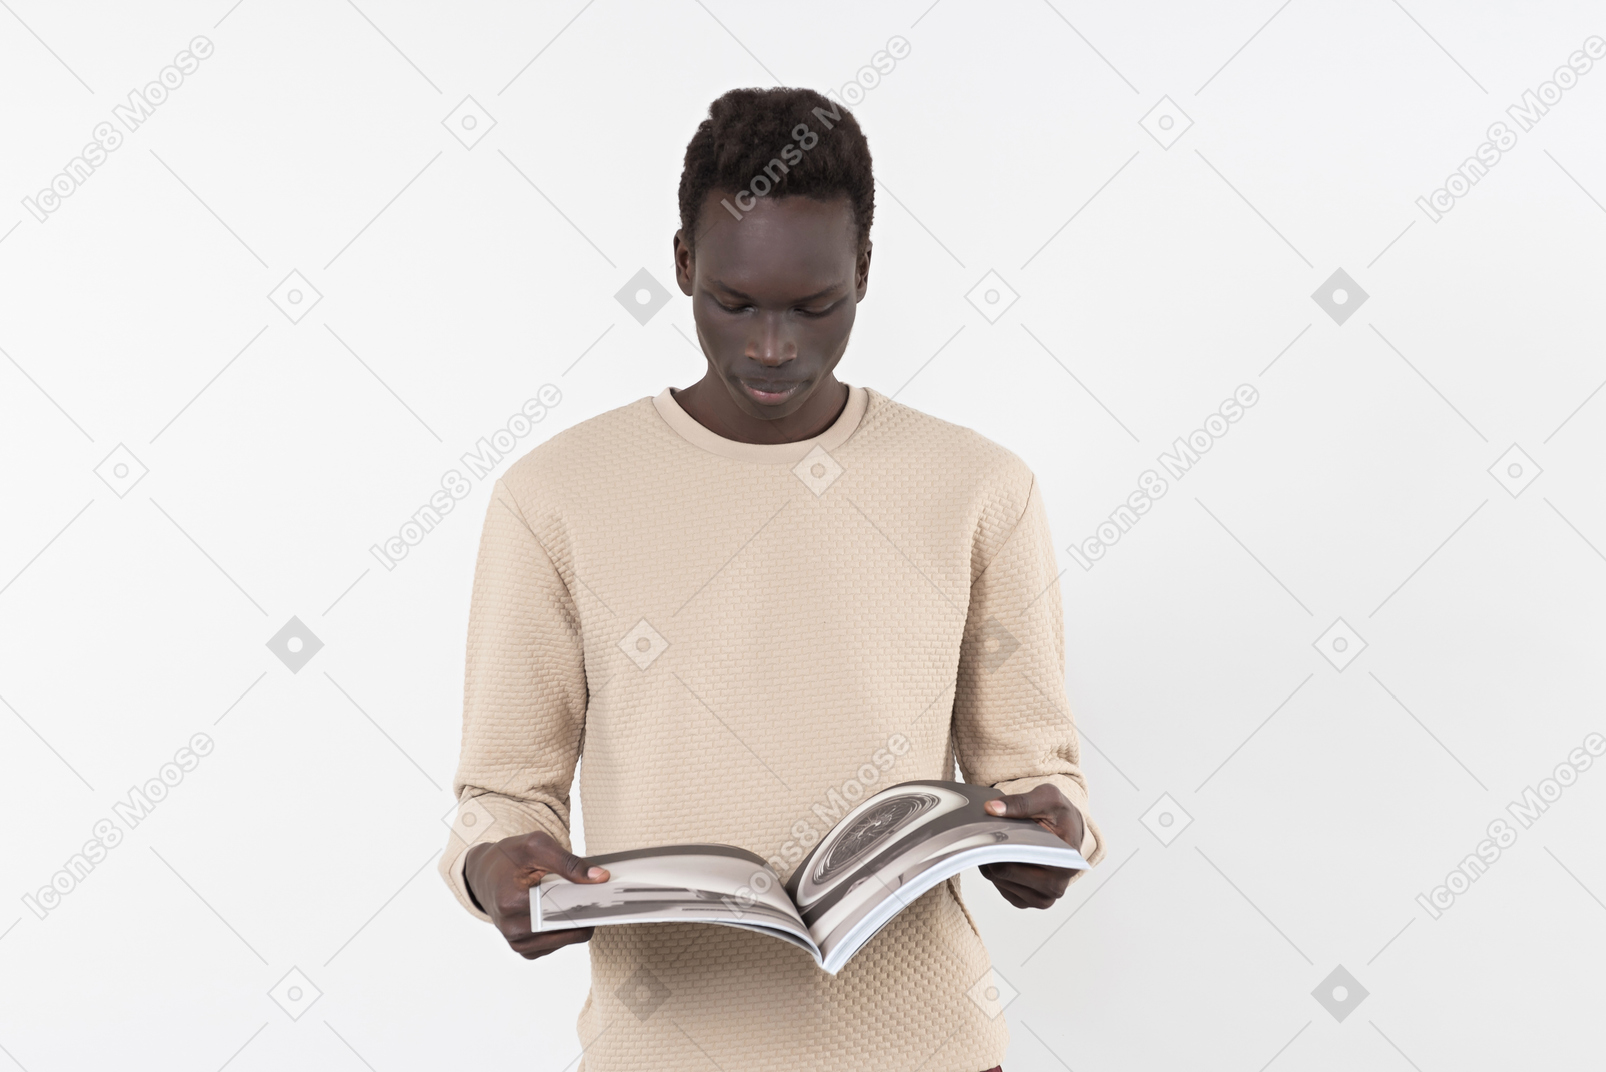 Um jovem negro com um suéter cinza sozinho no fundo branco com um livro nas mãos